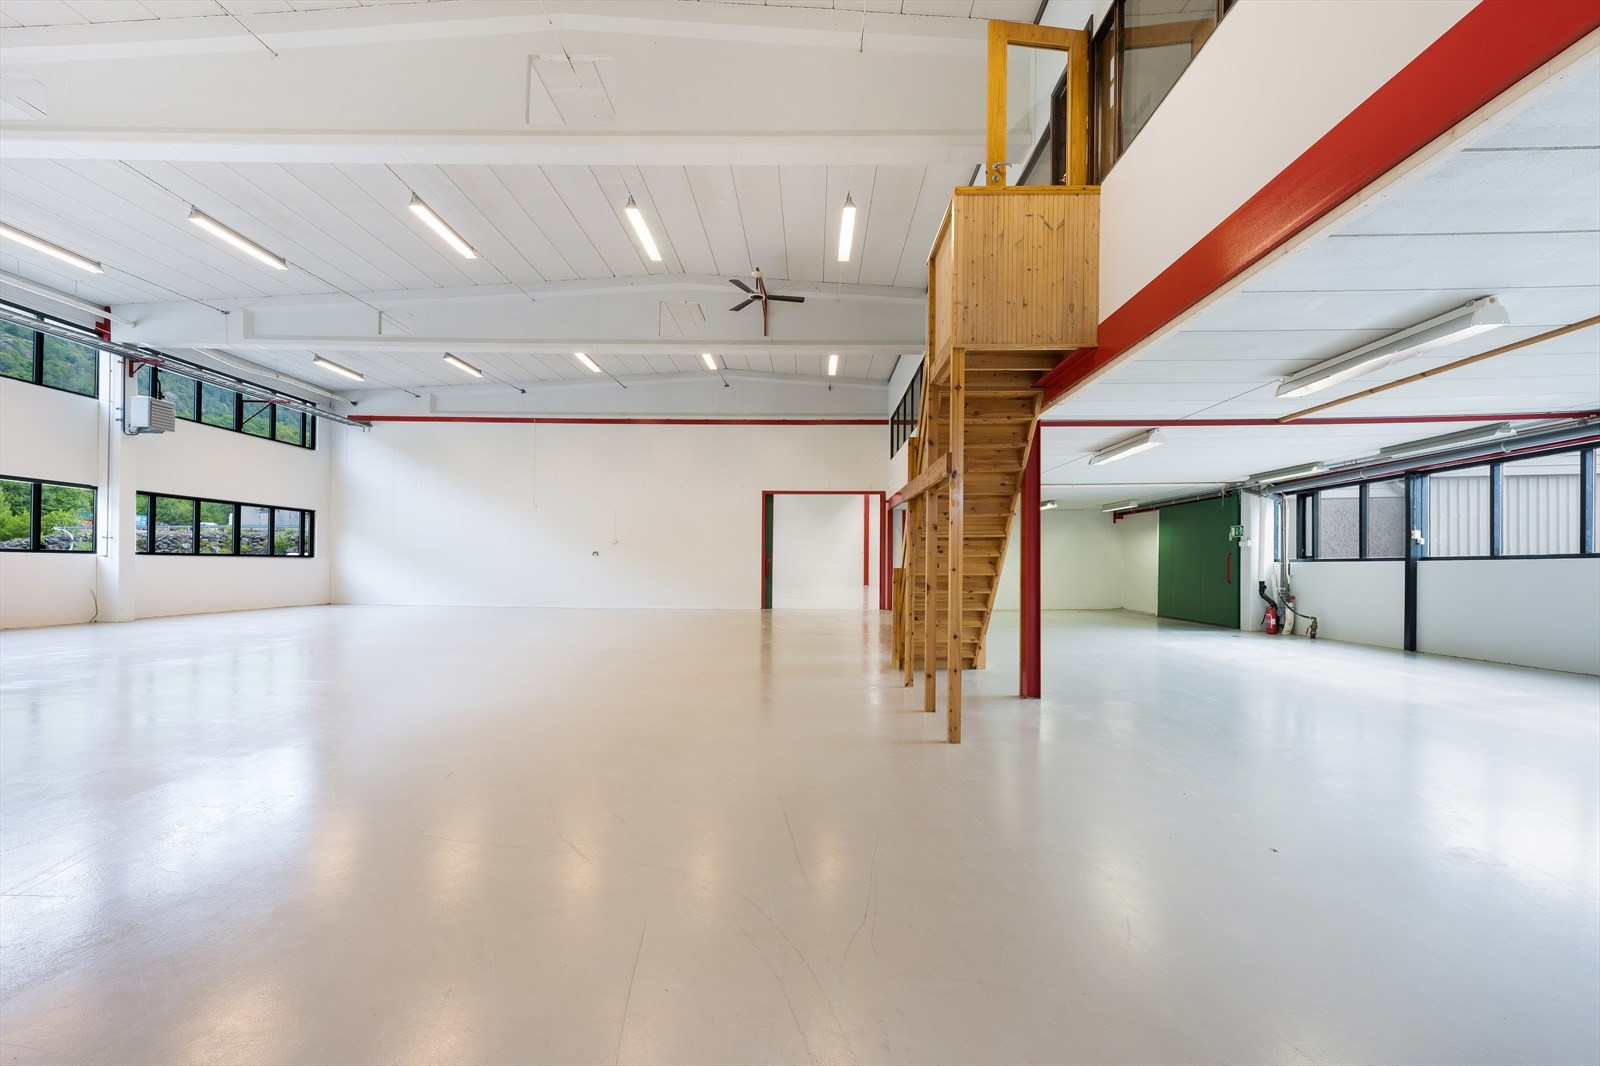 Hall 2: BTA 388 m² + mesanin på BTA 110 m² med 2 kontorer. 
Takhøyder: 4,9m under taksperrene. 5,5-6,2m til tak. 2,6/2,8m under mesaniner.